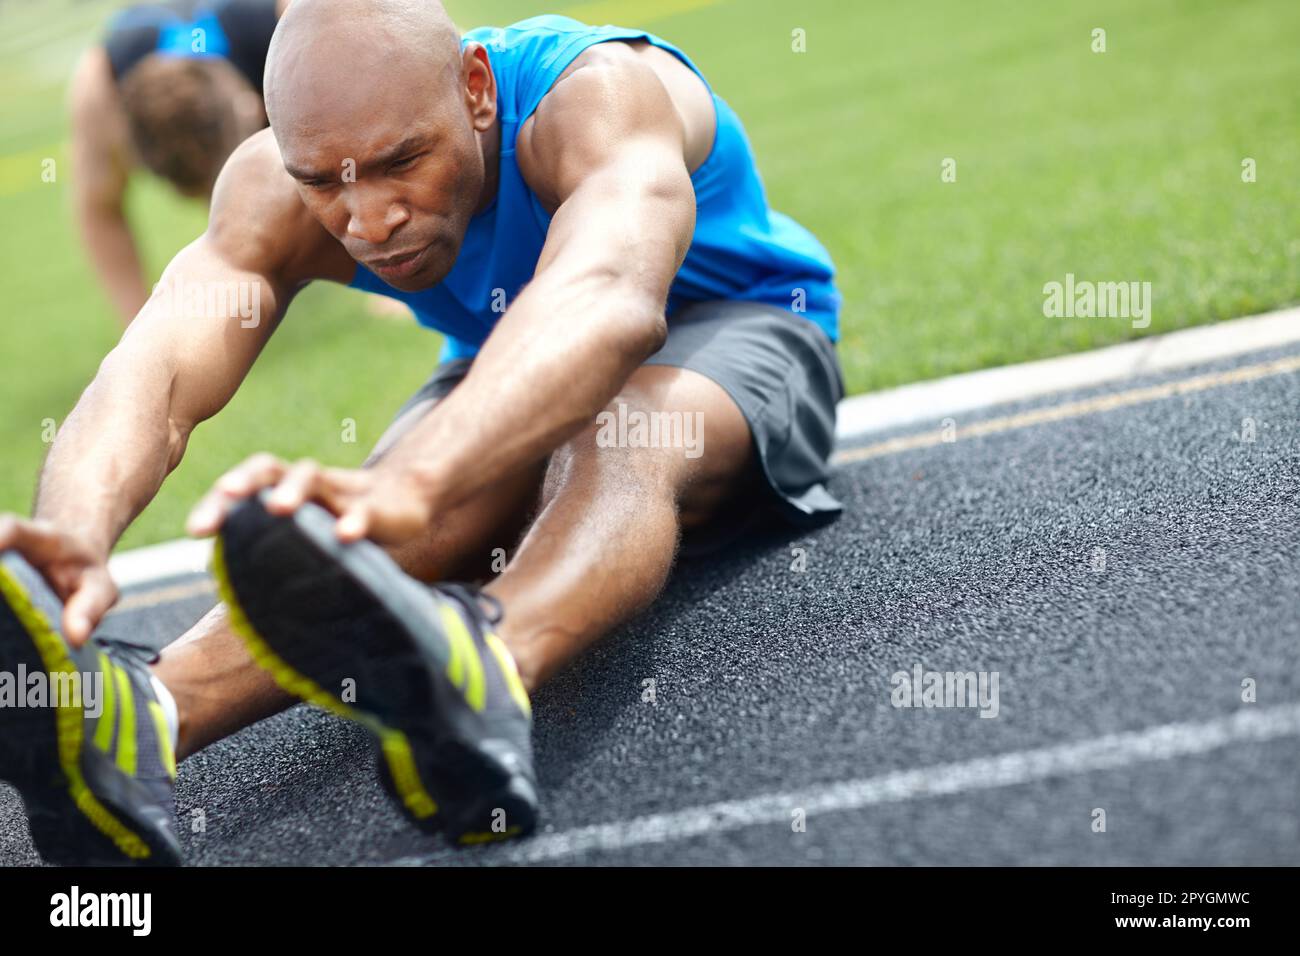 Aufwärmphase. Nahaufnahme eines männlichen Athleten, der seine Muskeln auf der Rennstrecke dehnt. Stockfoto